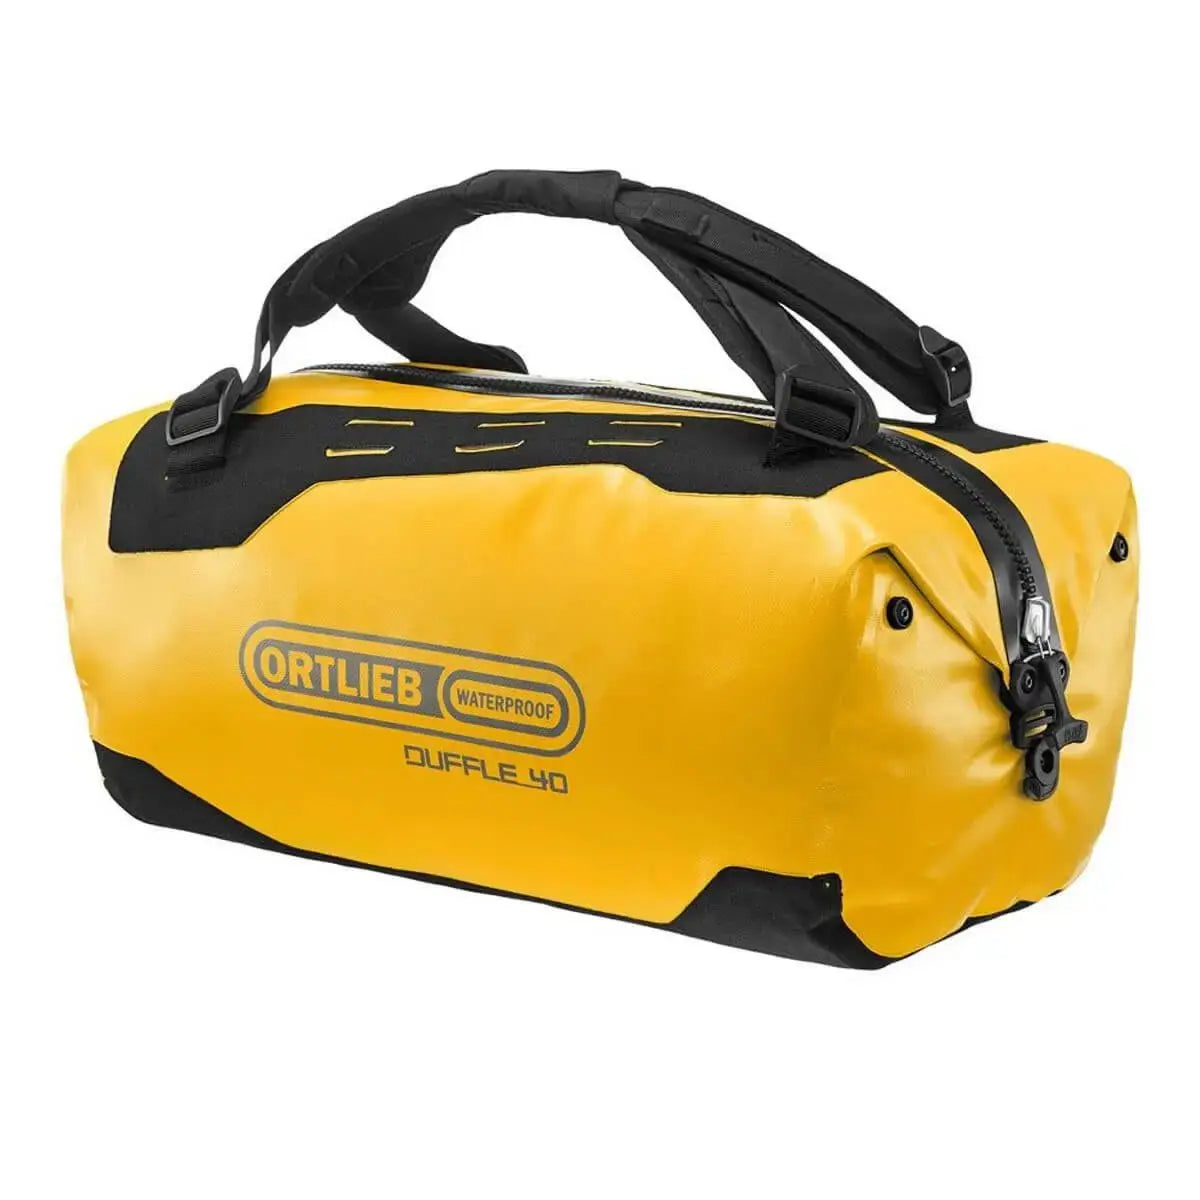 Ortlieb Duffle 40L Waterproof Travel Bag